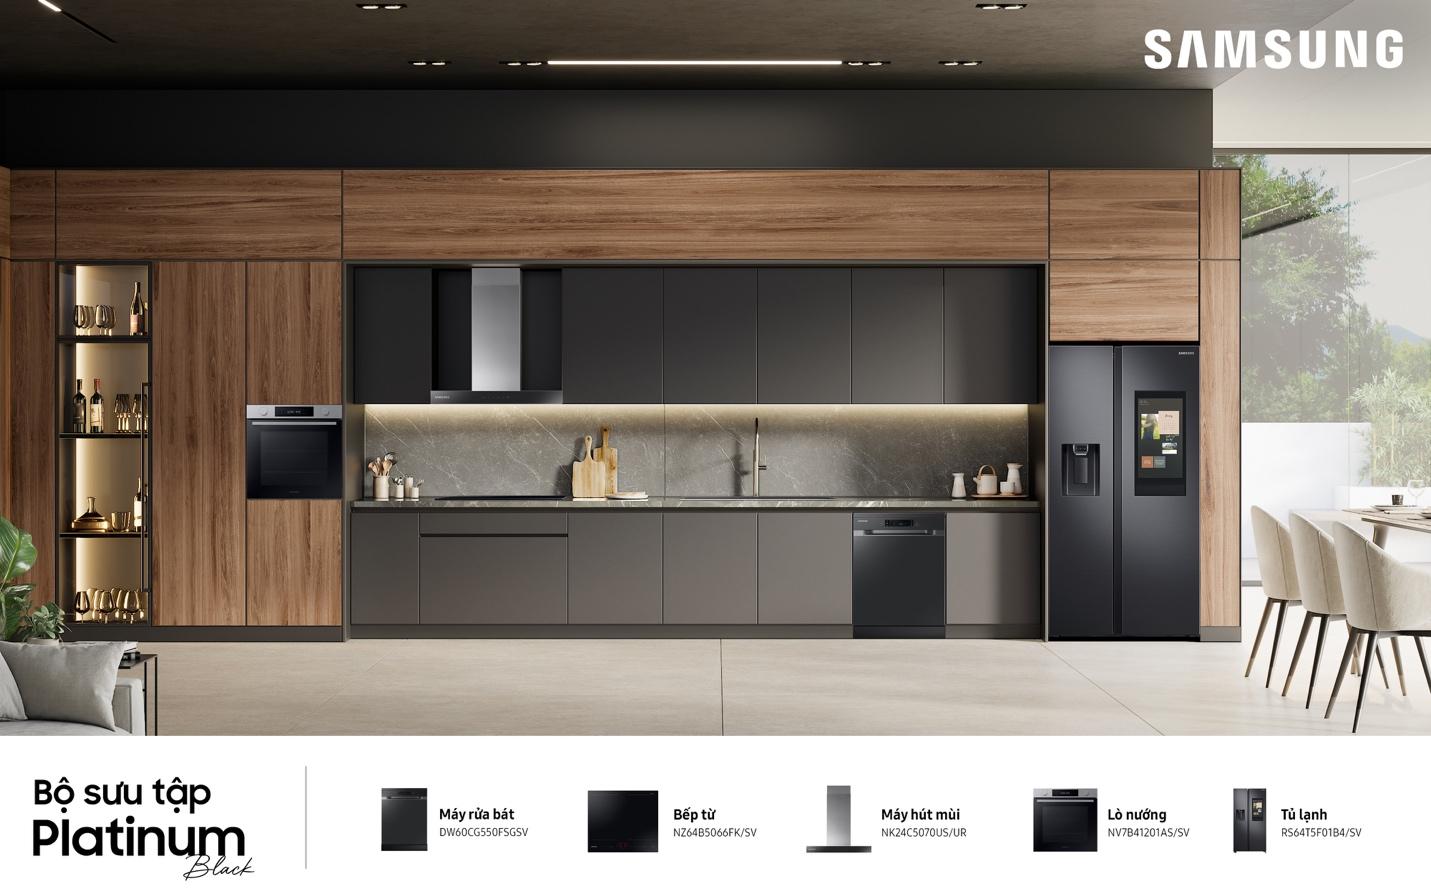 Samsung ra mắt bộ sưu tập bếp thông minh Bespoke tại Việt Nam - T7VTl1VqWiZZkKJ5SLCsrGCvZ4D7 5j72qqkn6Jy1pAKVZ5NTgavLxuQMxyJ597j99zSasCicKQnyUbfbneN2u8zGiEf3g6HlHLZ3ZAju1TD3KPlzuKdGYrwRtakEzgzxwShM88qlhHNpb X1dDkeA